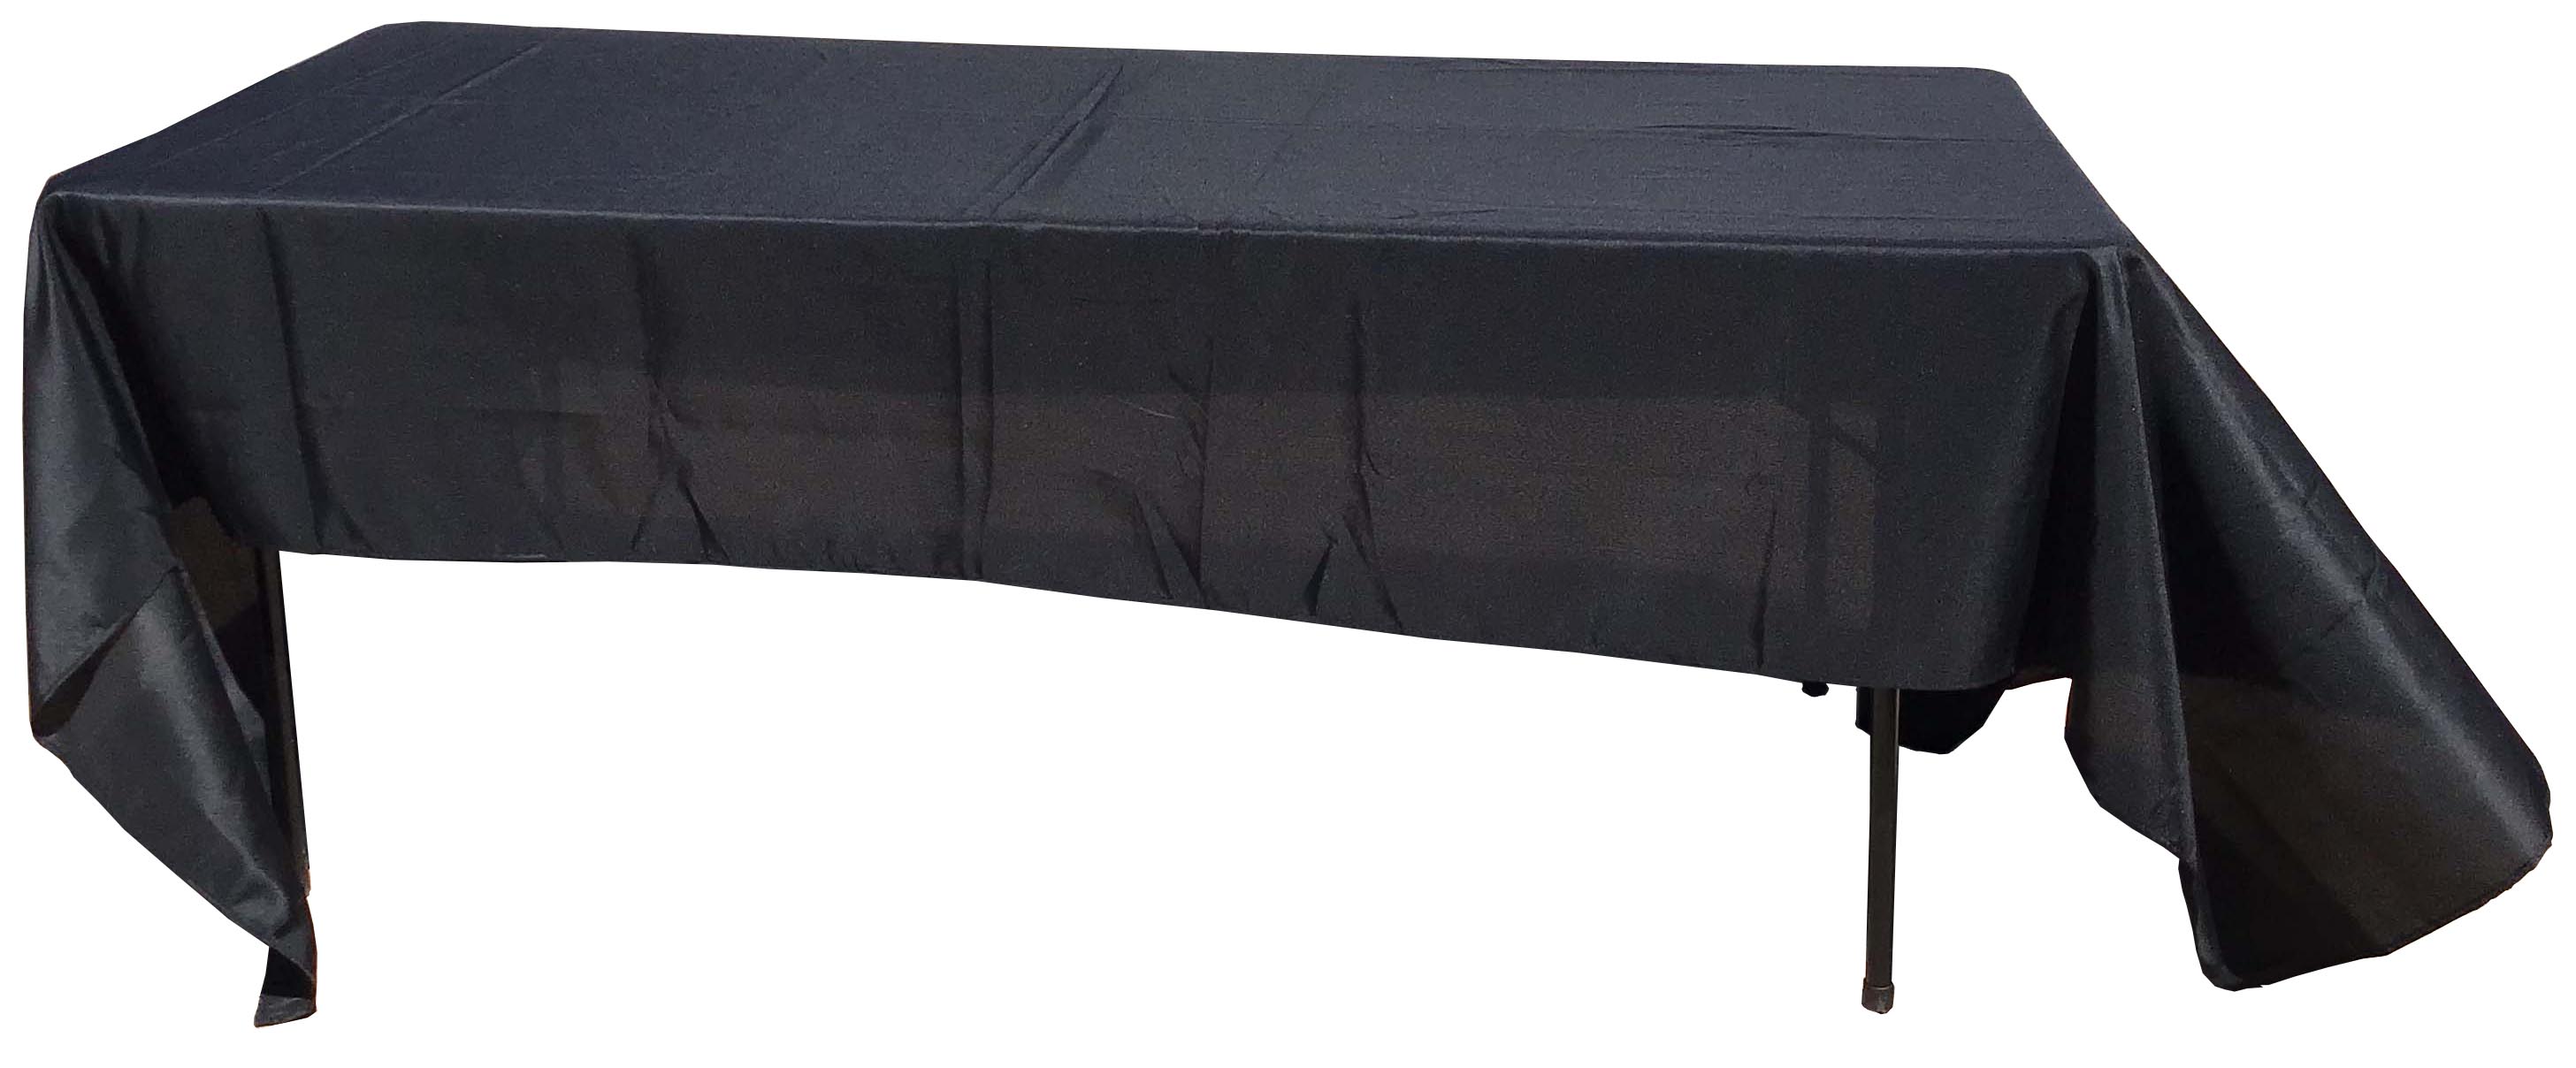 rectangle tablecloths (black) - 60 x 126